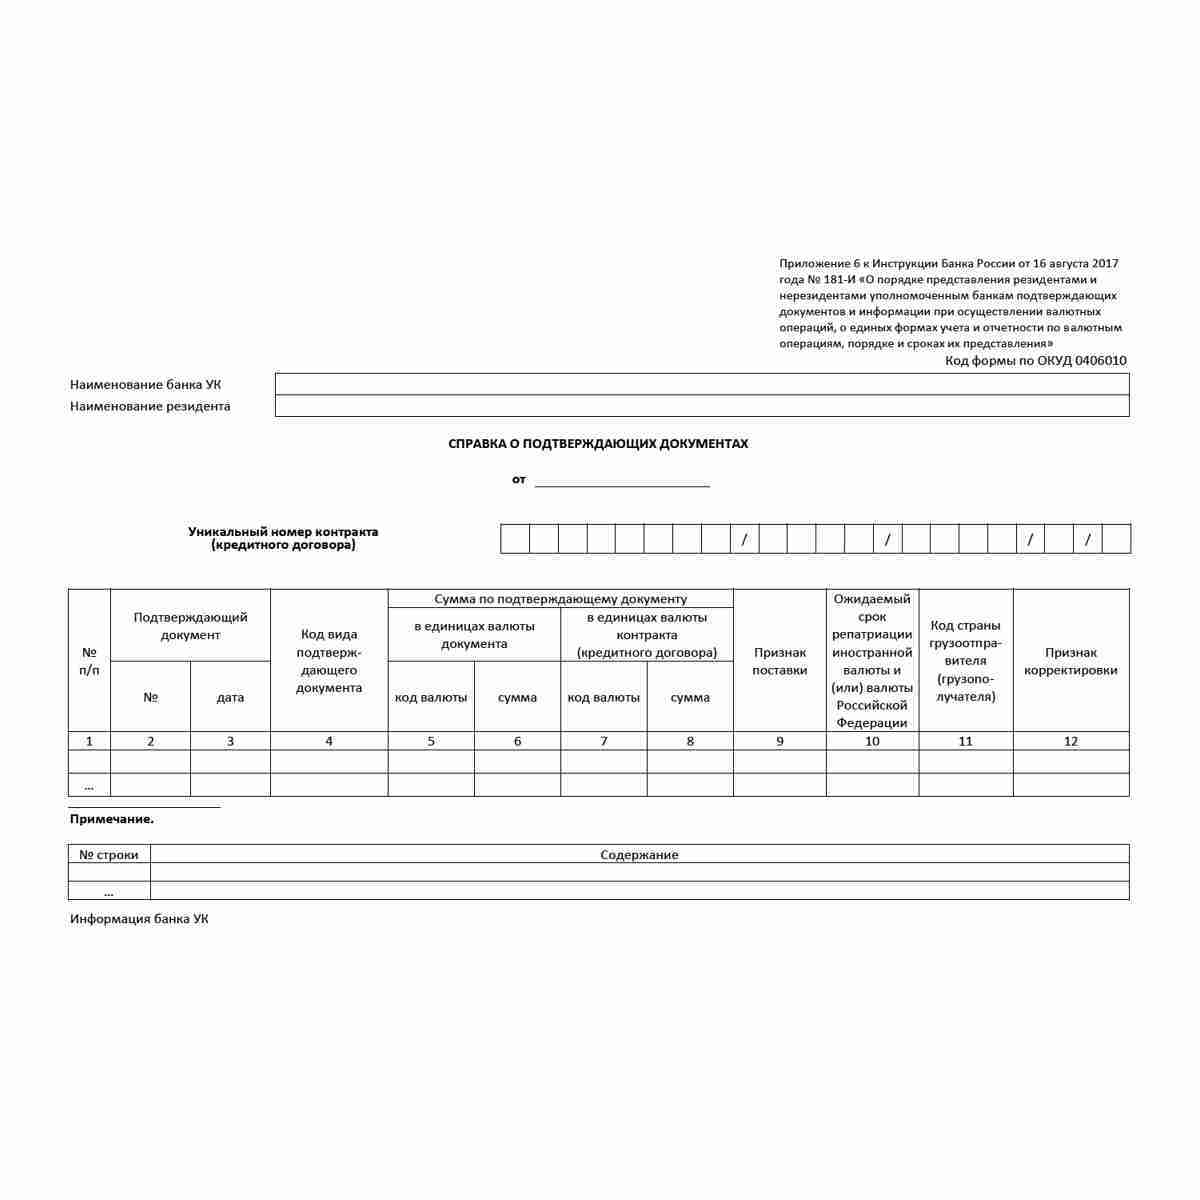 Форма "Справка о подтверждающих документах" (ОКУД 0406010)